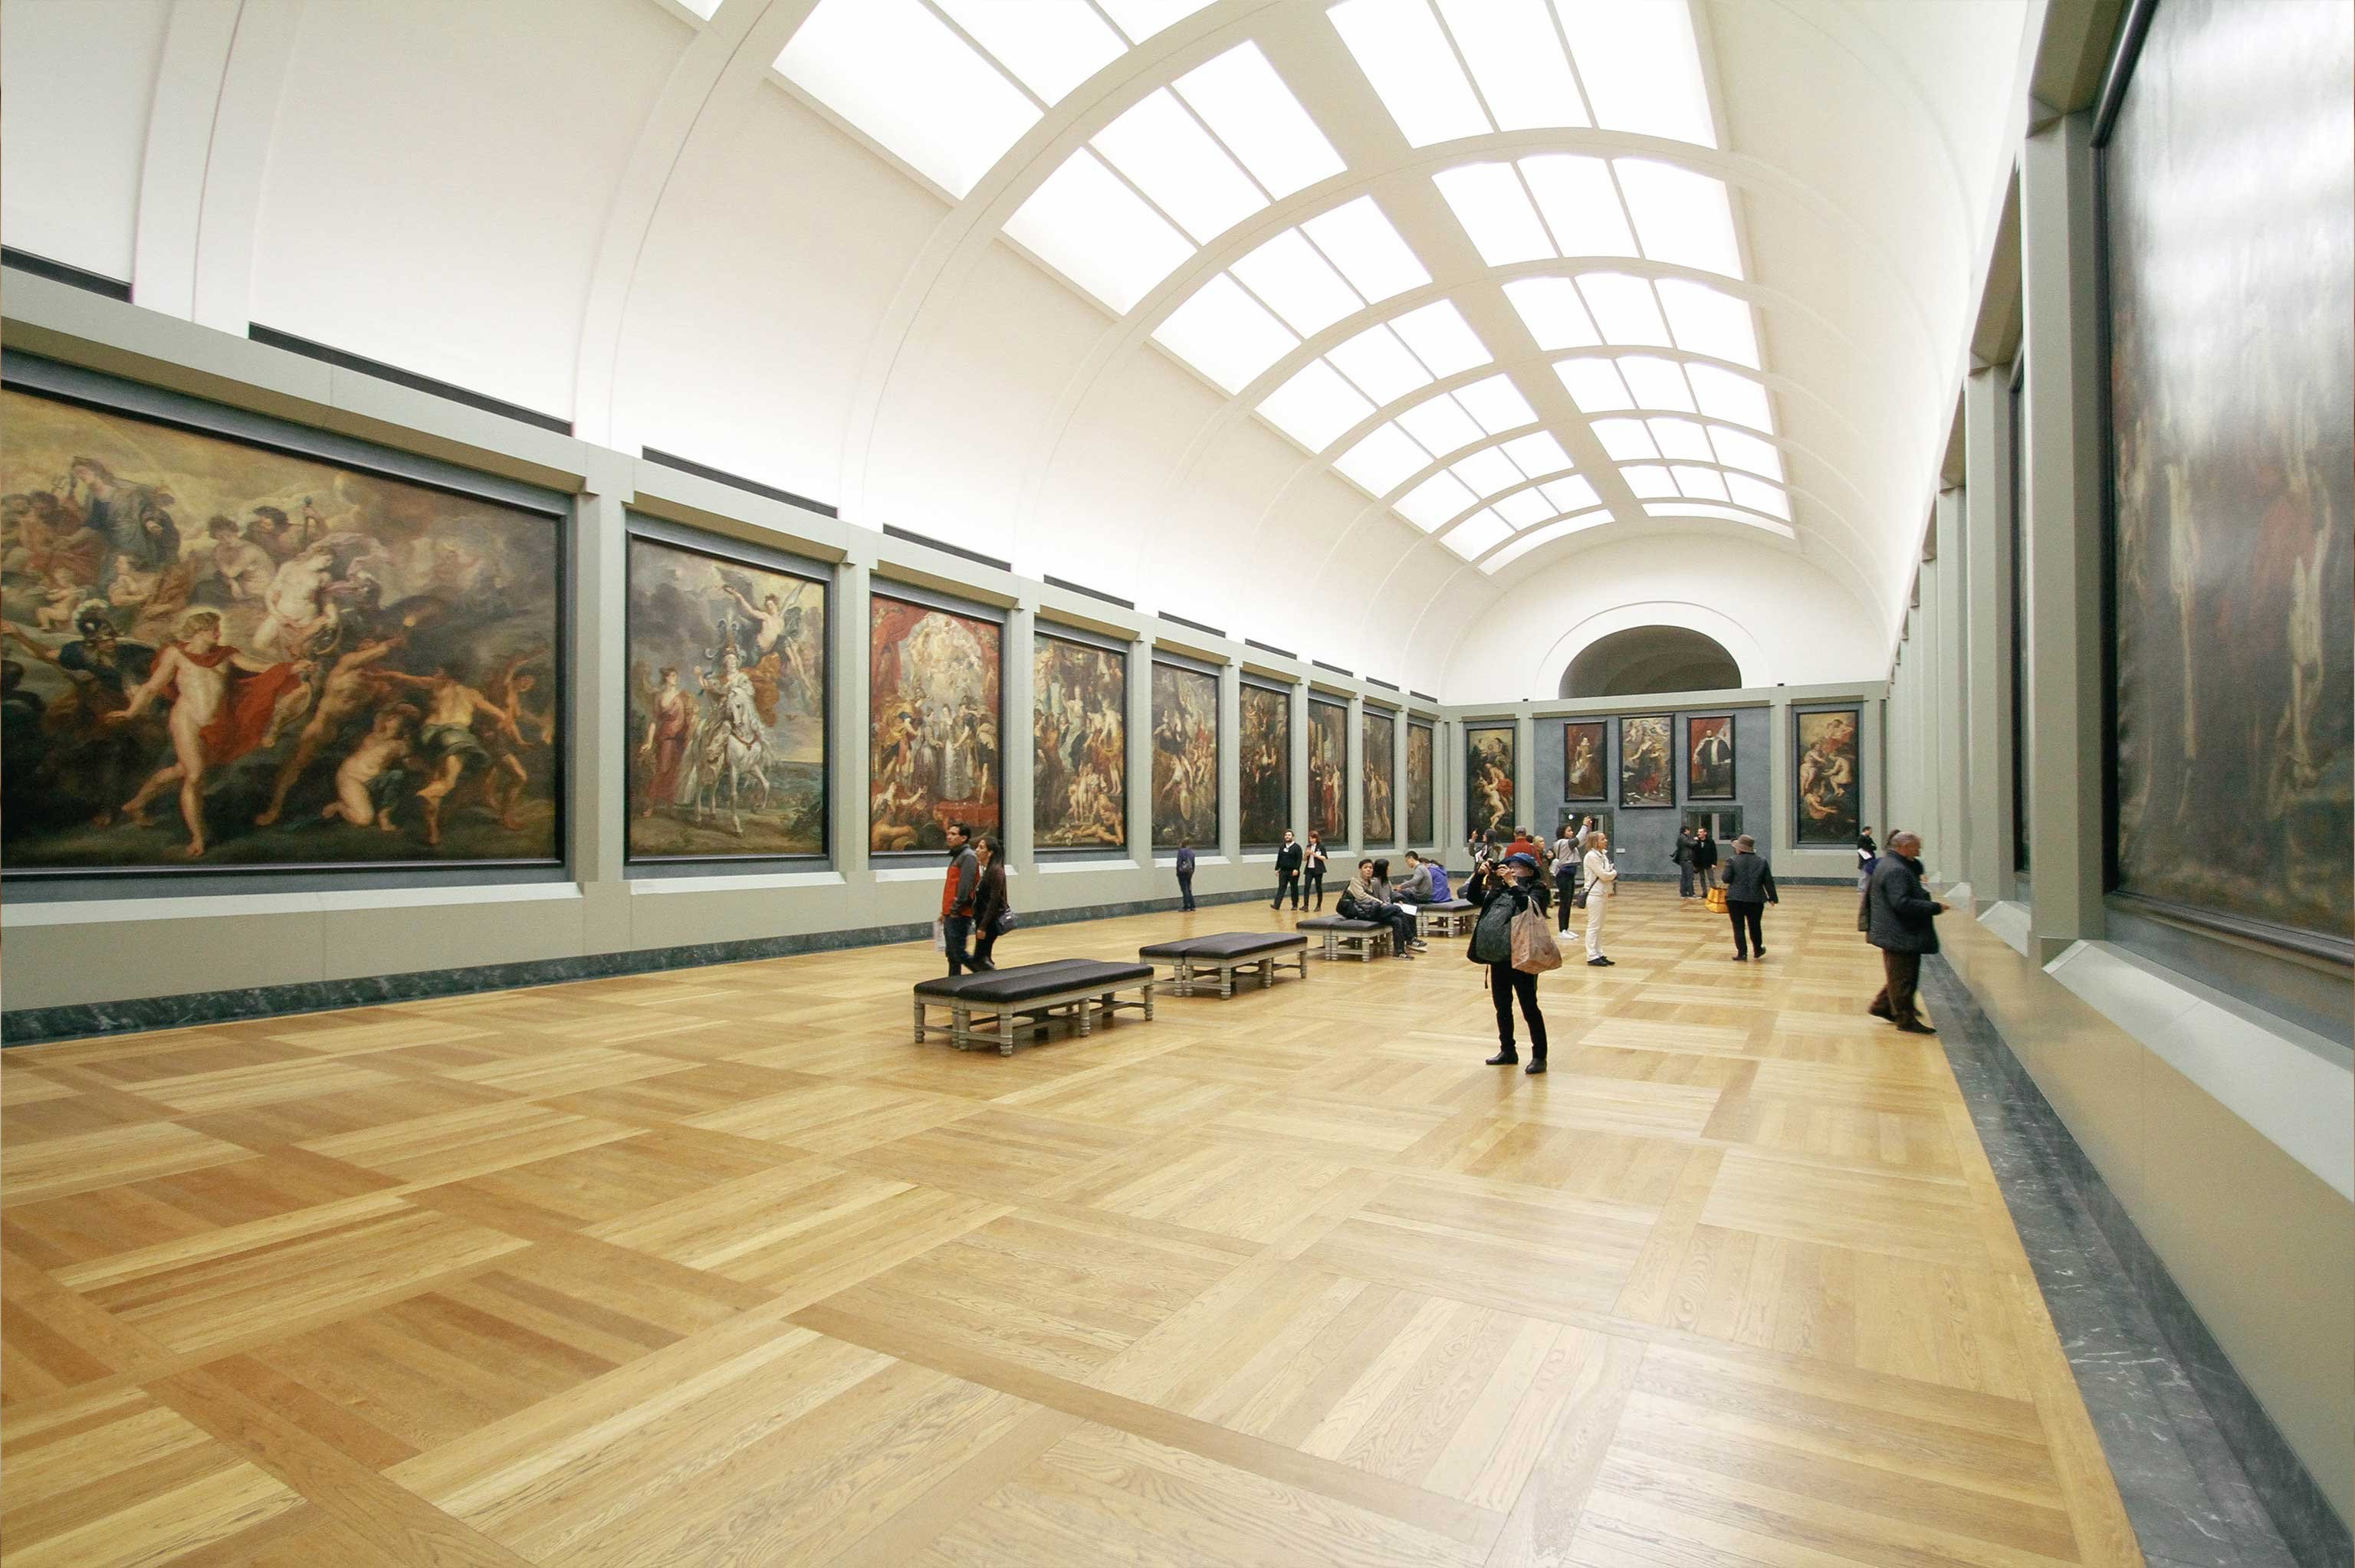 People walking through an art museum 